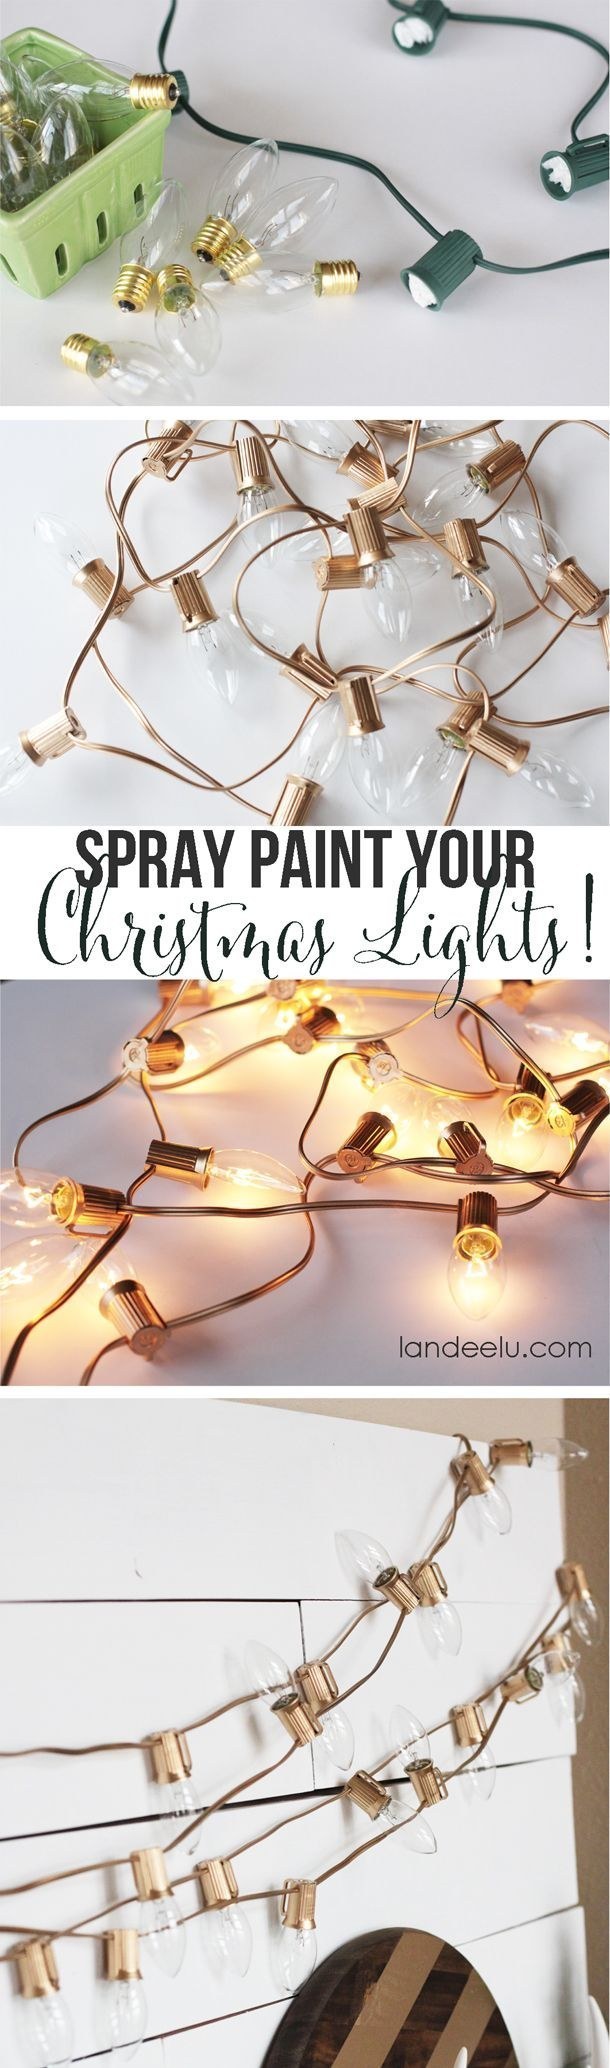 Spray paint holiday bulbs